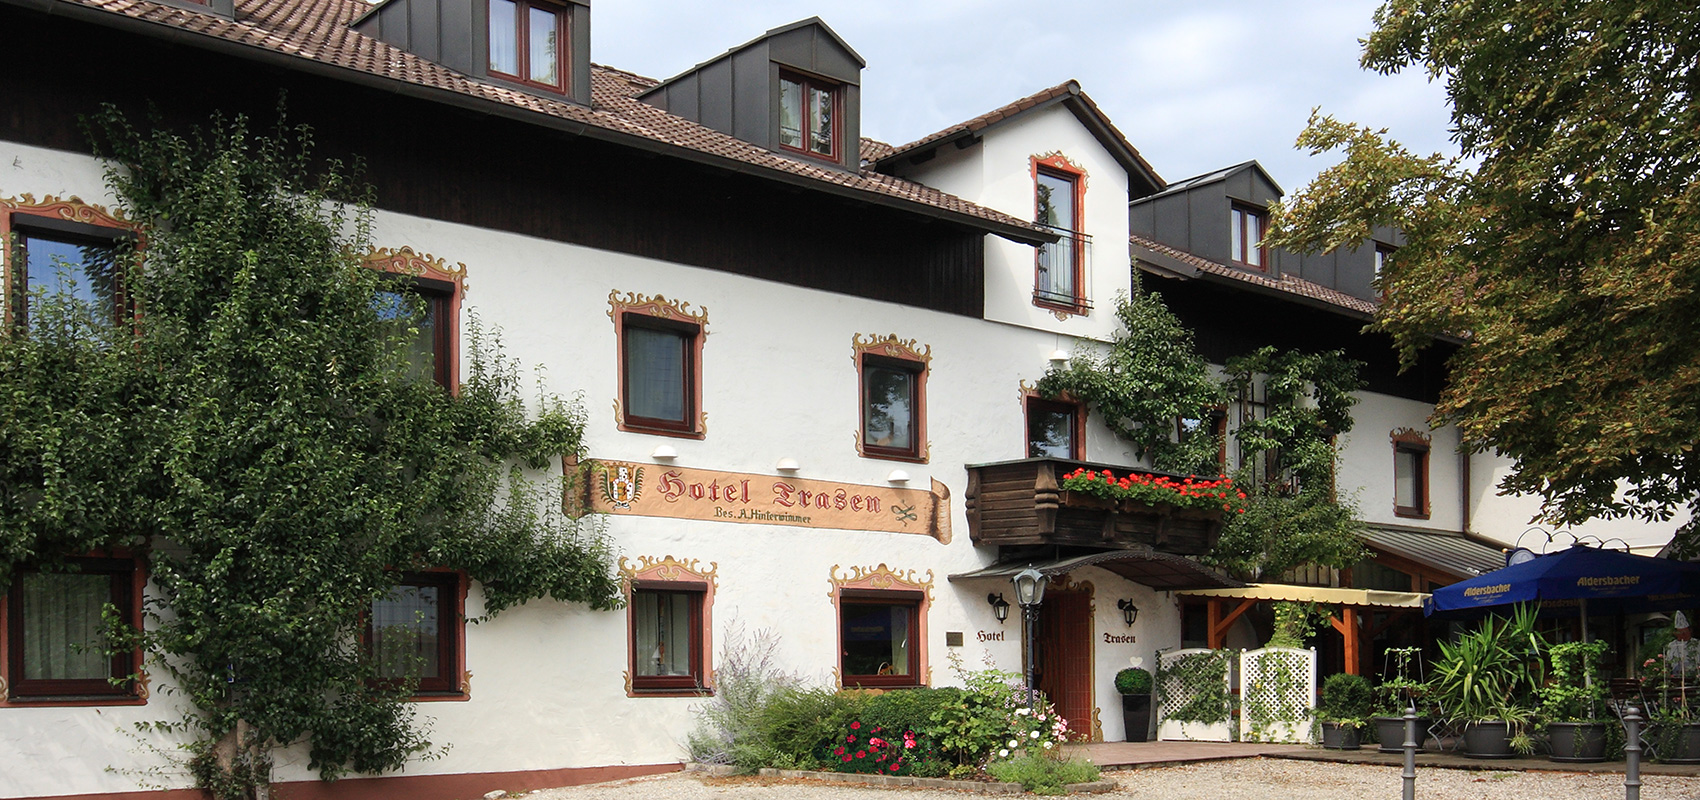 Hotel Trasen Waldkraiburg - St. Erasmus im Landkreis Mühldorf, Aschau, Gars, Guttenburg, Kraiburg